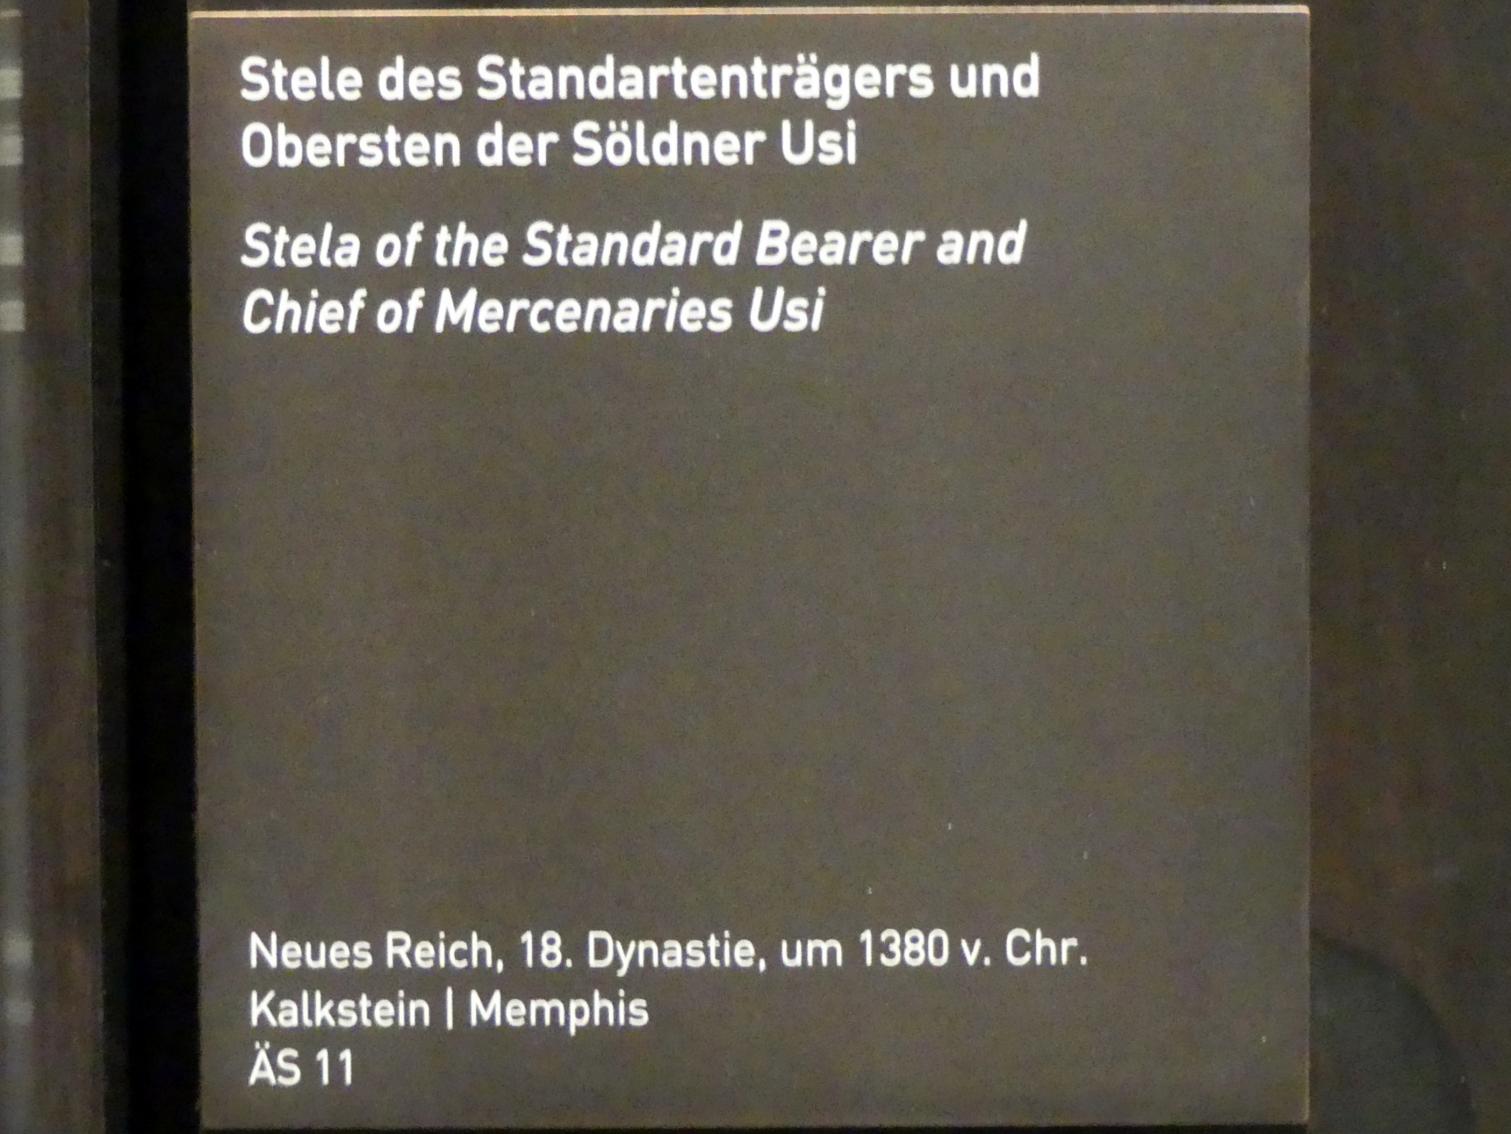 Stele des Standartenträgers und Obersten der Söldner Usi, 18. Dynastie, Undatiert, 1380 v. Chr., Bild 2/2